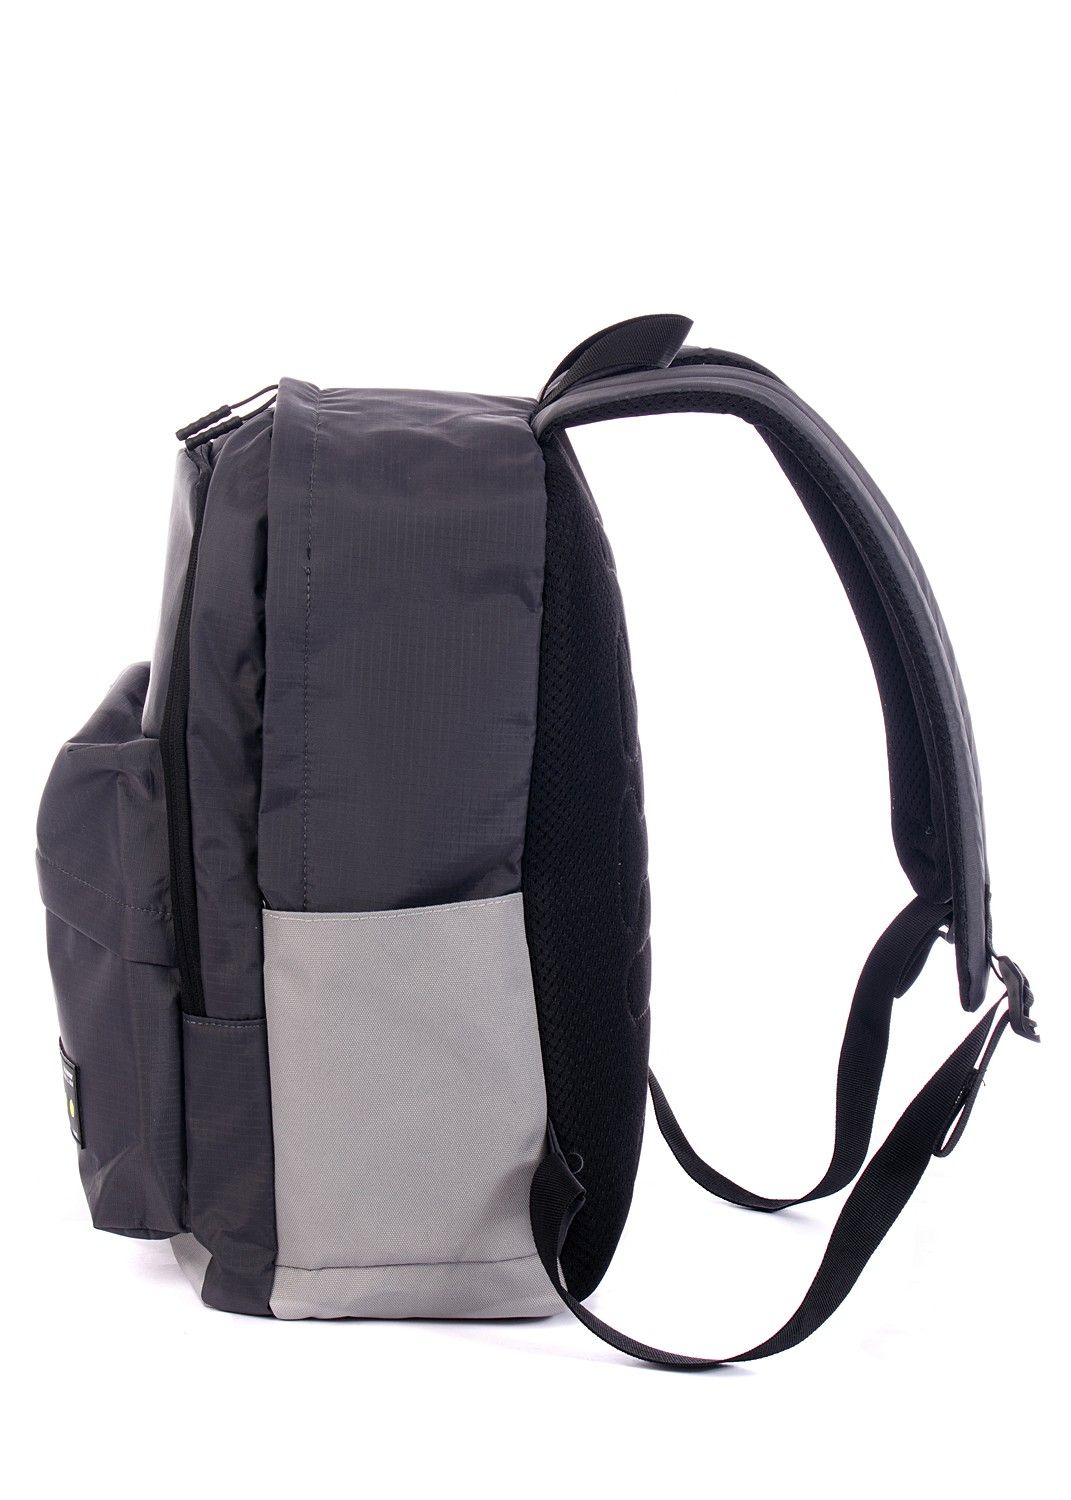 Рюкзак мужской темно-серый, однотонный, городской, с широкими лямками, 20л.